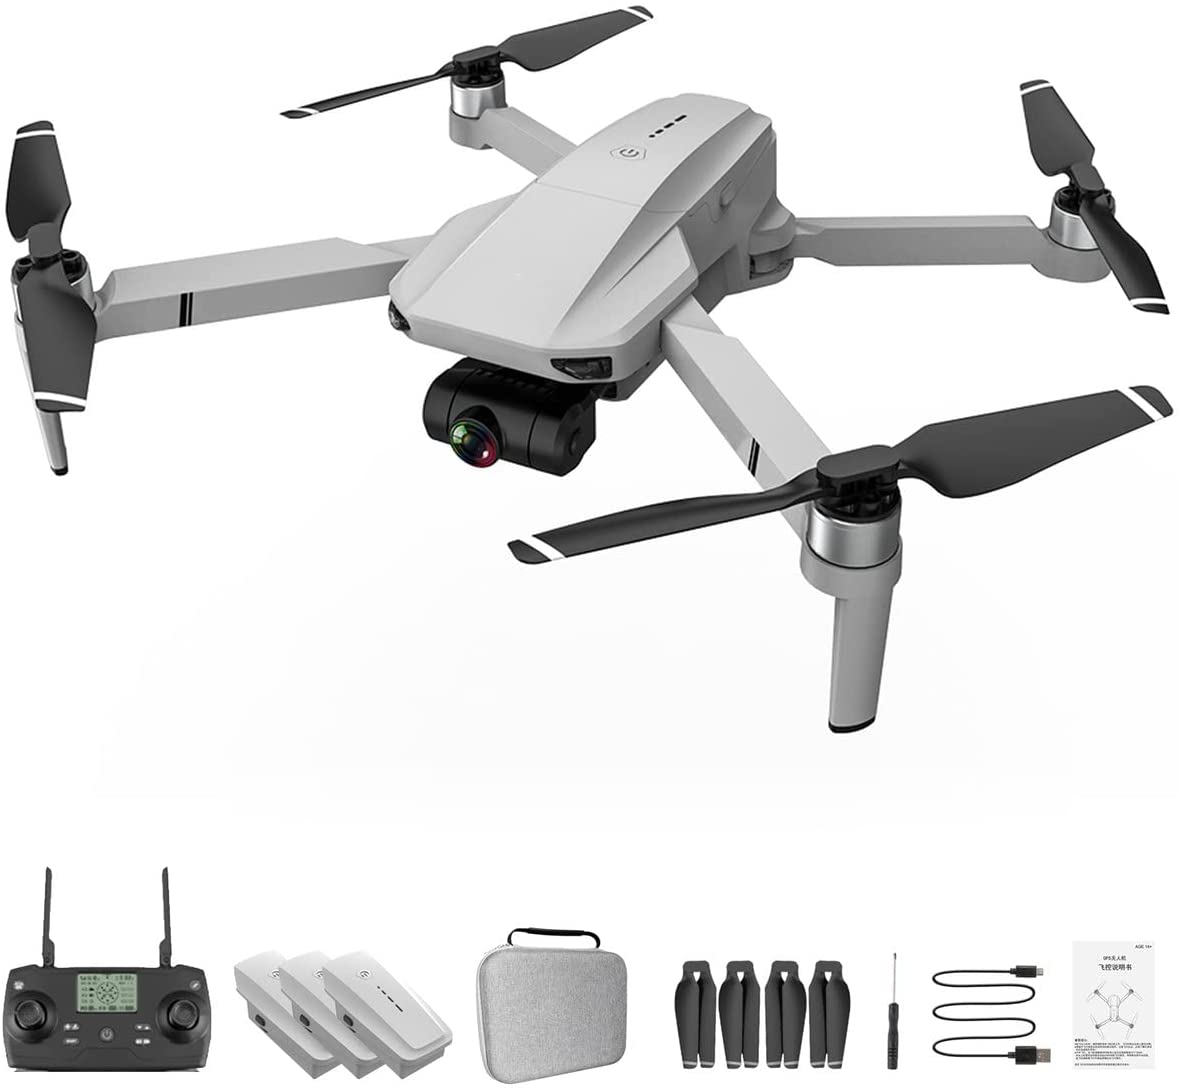 Kf102 Gps dobrável 4K Drone câmera 2 eixos Gimbal profissional anti-vibração fotografia aérea sem escova quadricóptero (branco cinza)